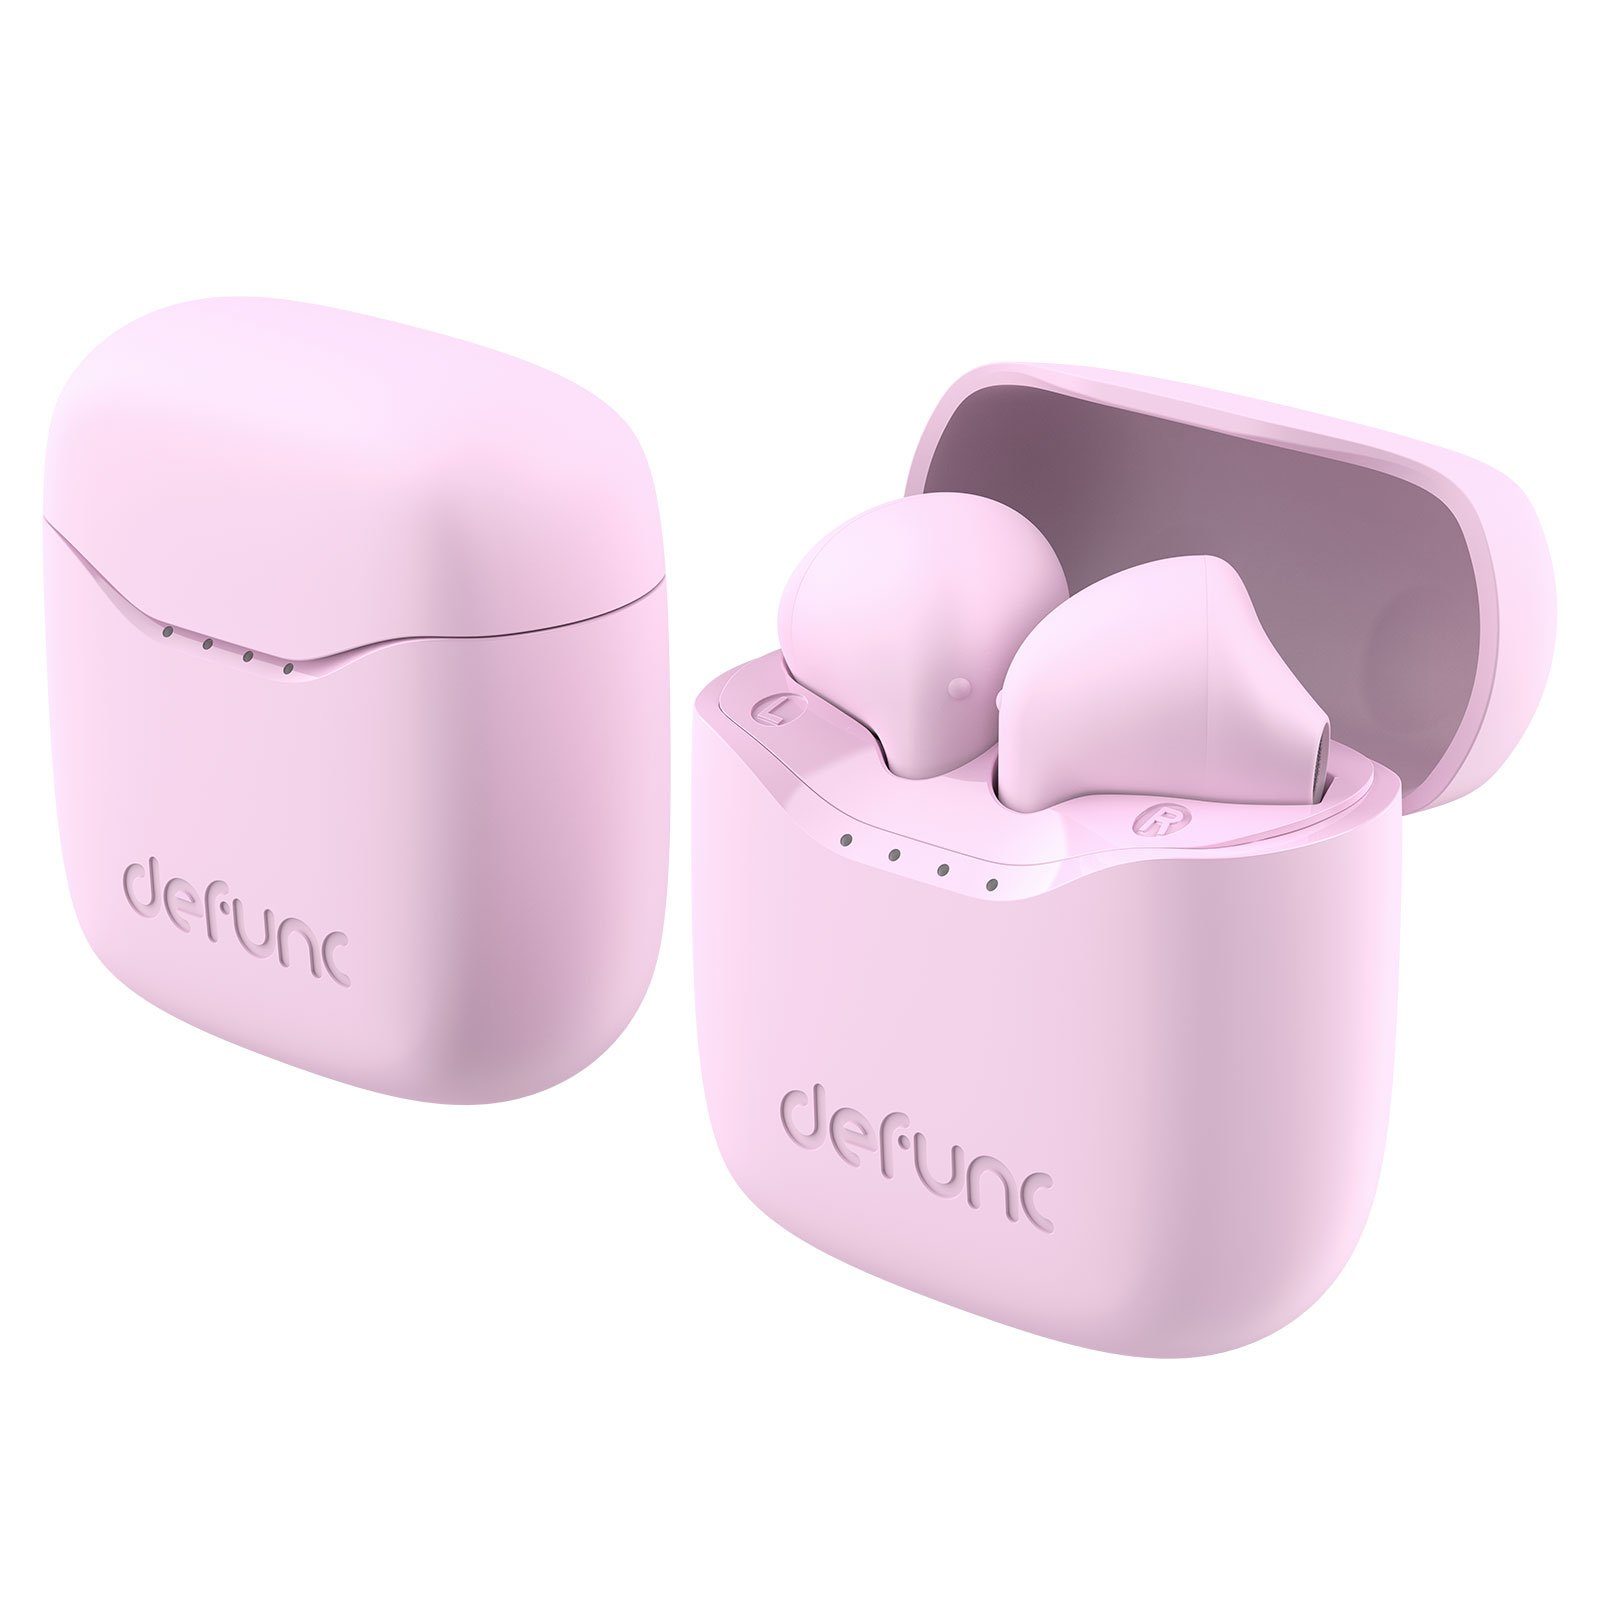 In-Ear-Kopfhörer Defunc Pink wireless True Defunc Lite